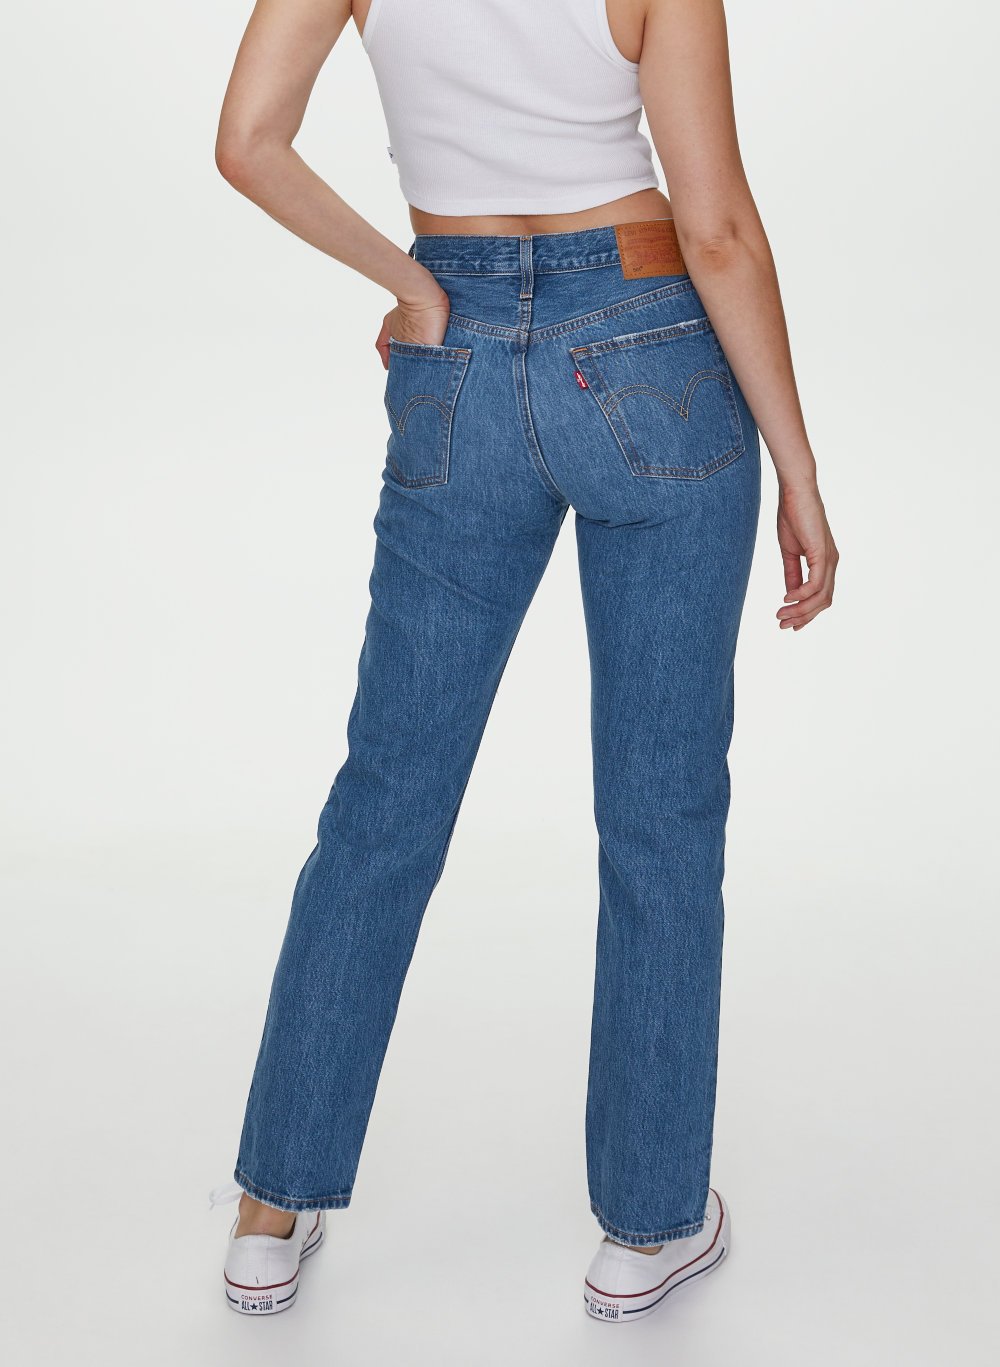 levis long jeans